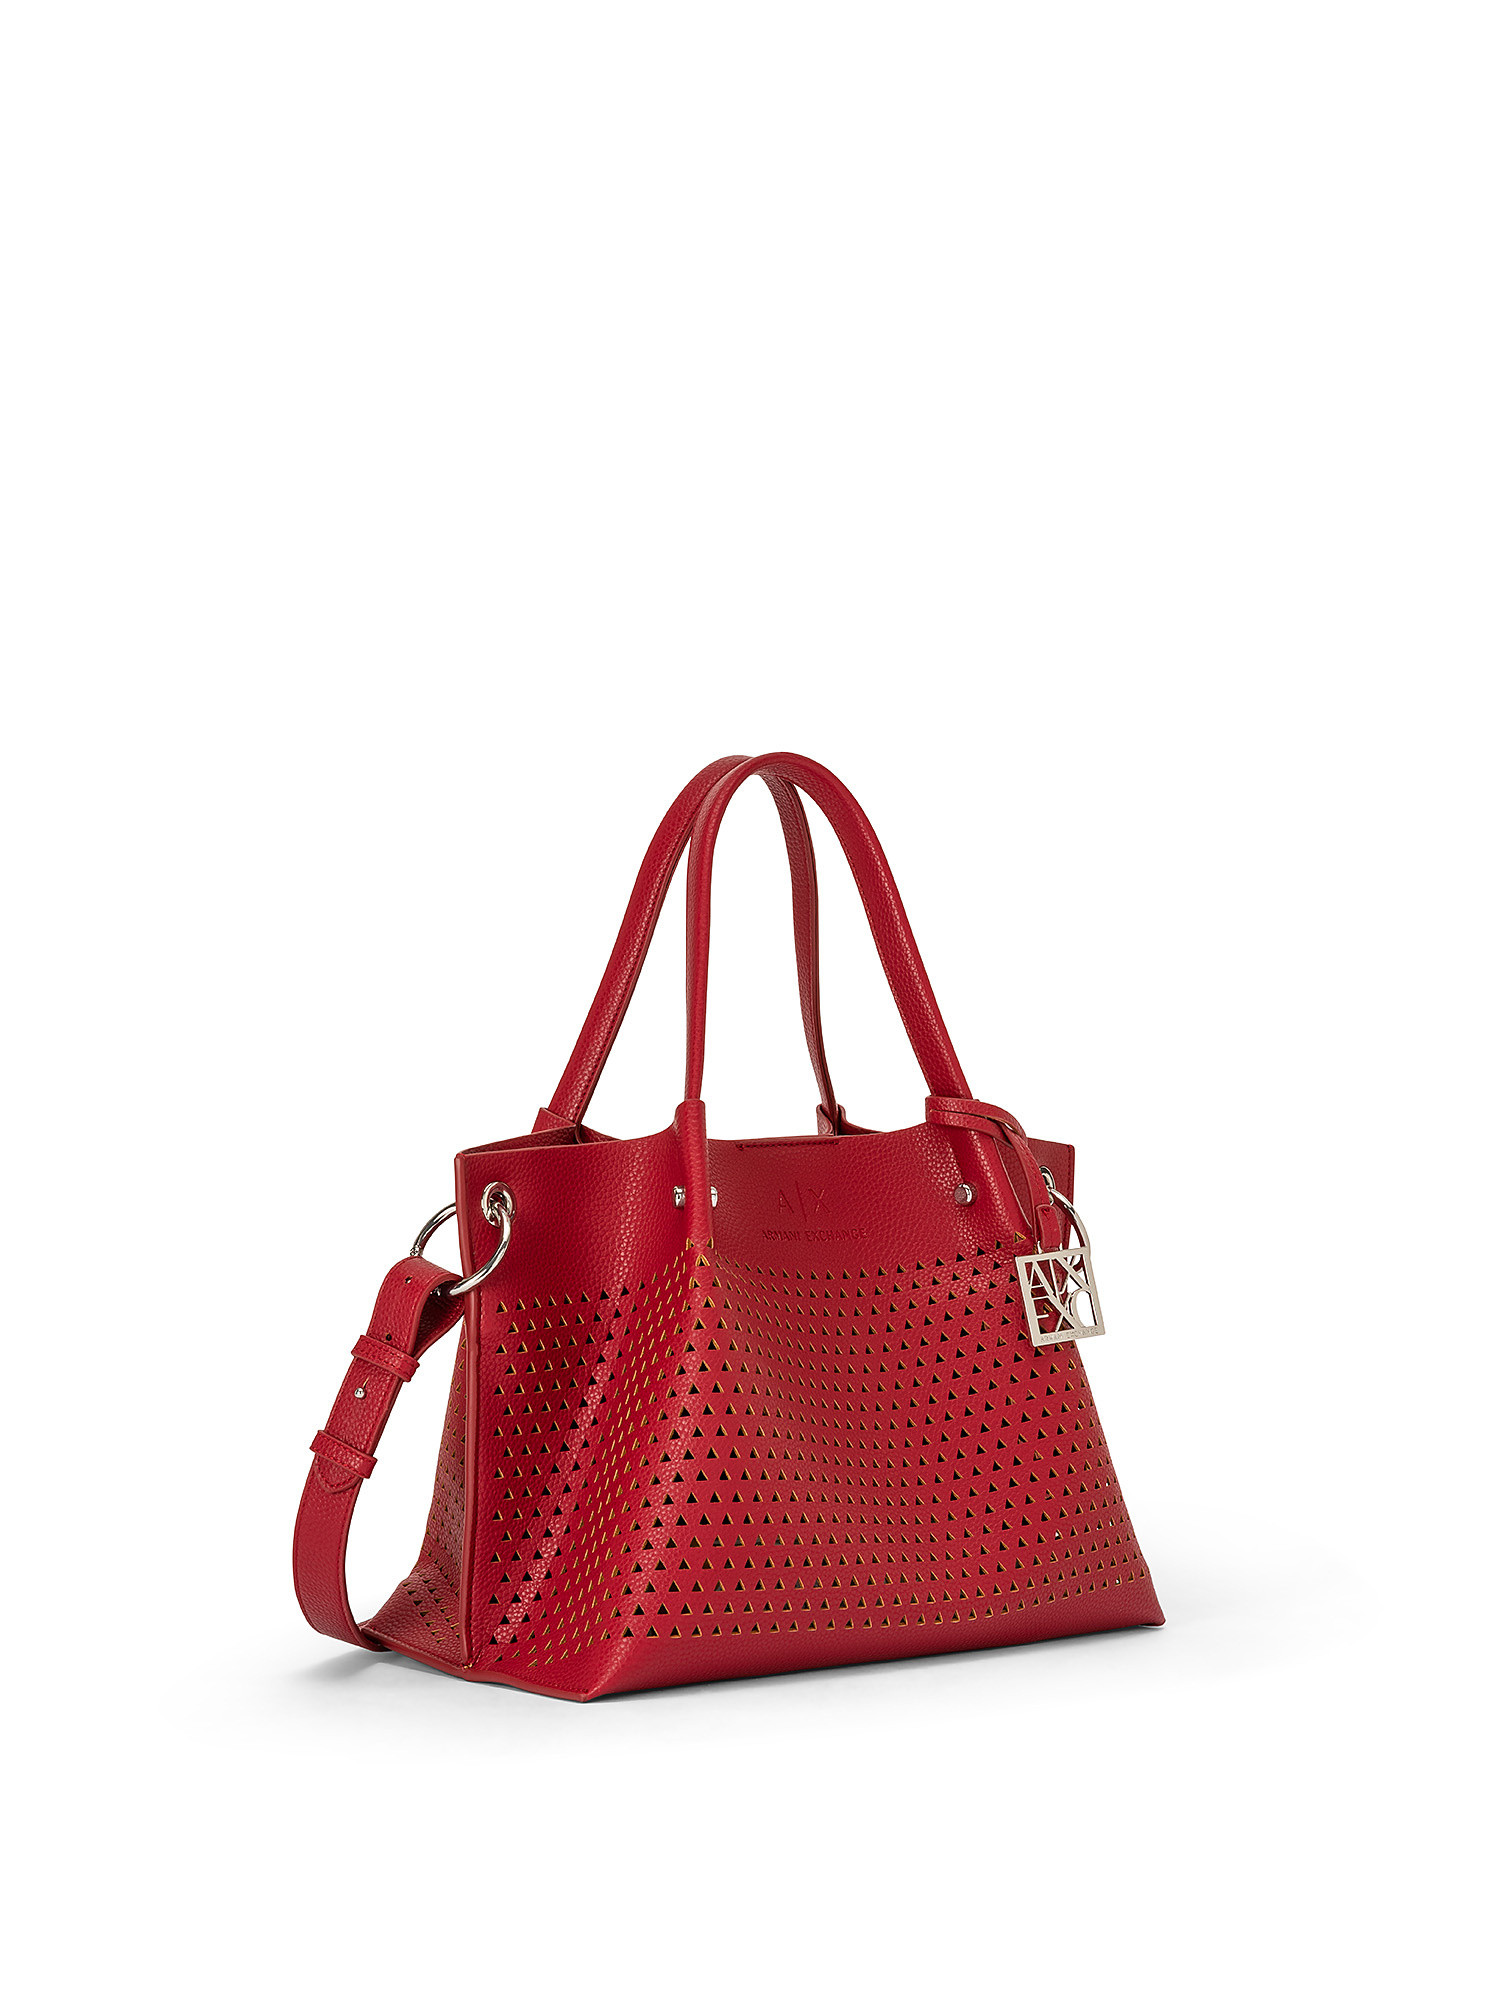 Shopping bag con cerniera superiore, Rosso, large